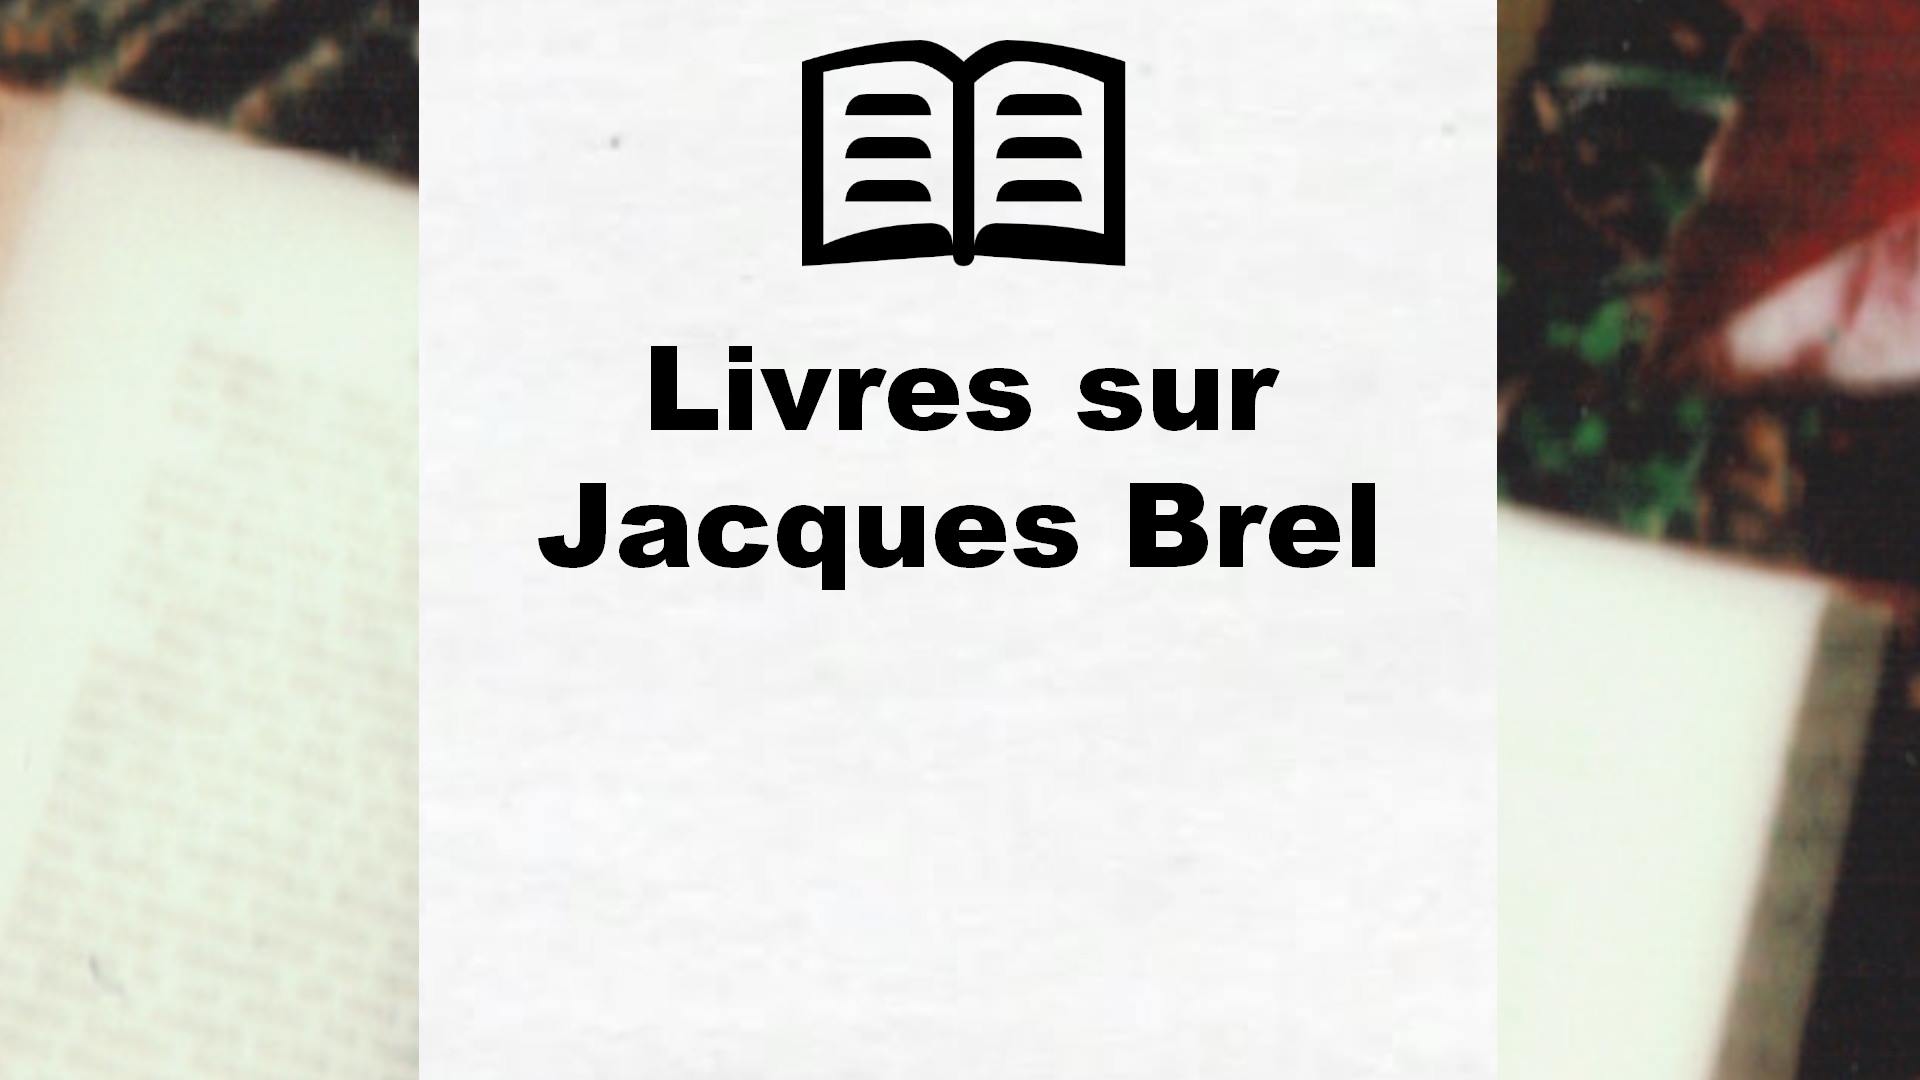 Livres sur Jacques Brel